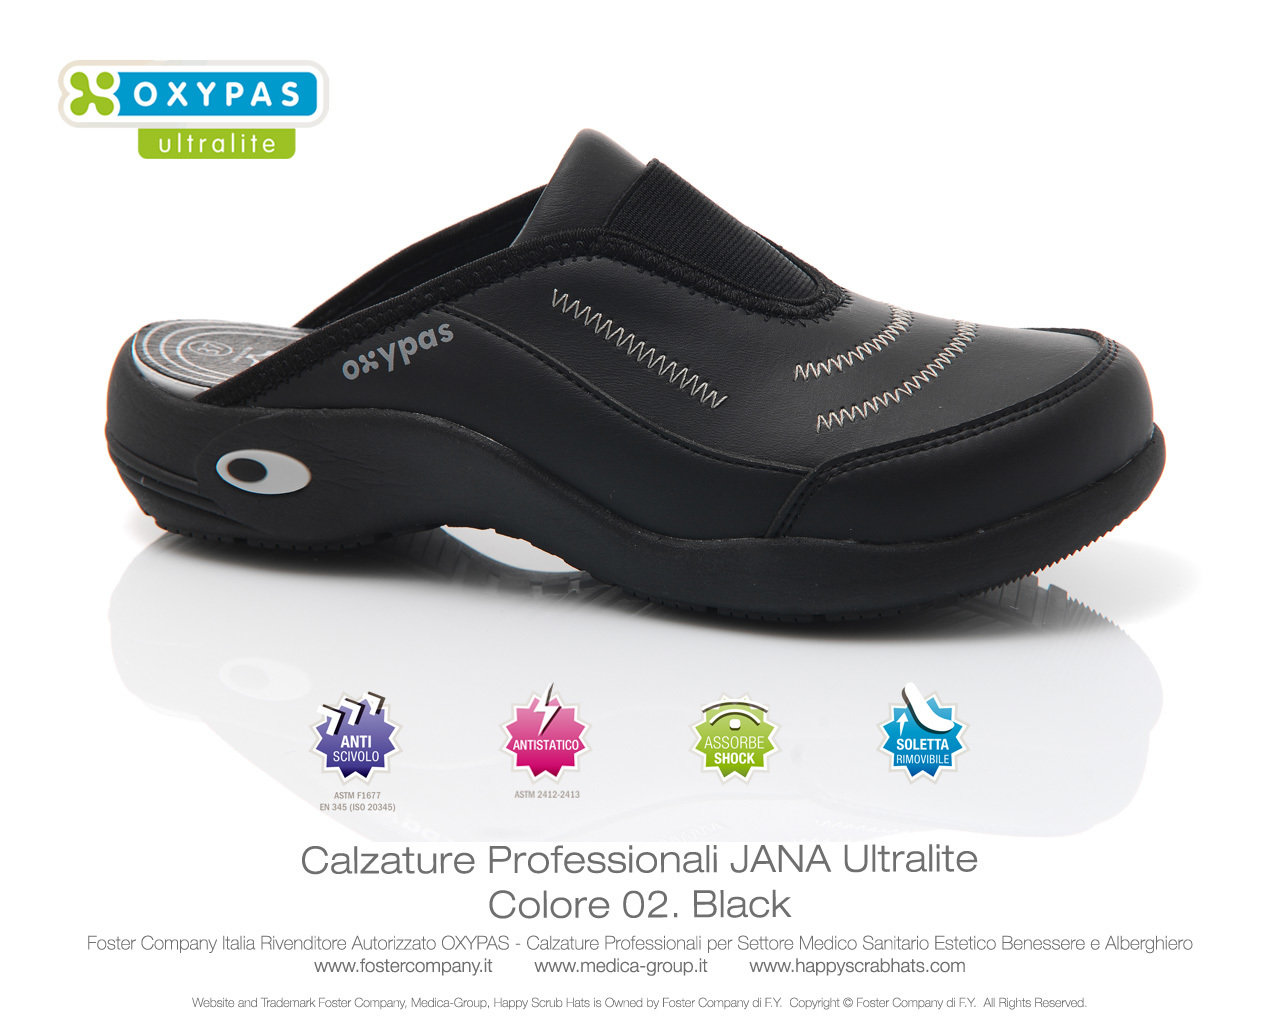 Calzature Professionali Oxypas JANA Colore 01. White - 02. Black - FINE  SERIE